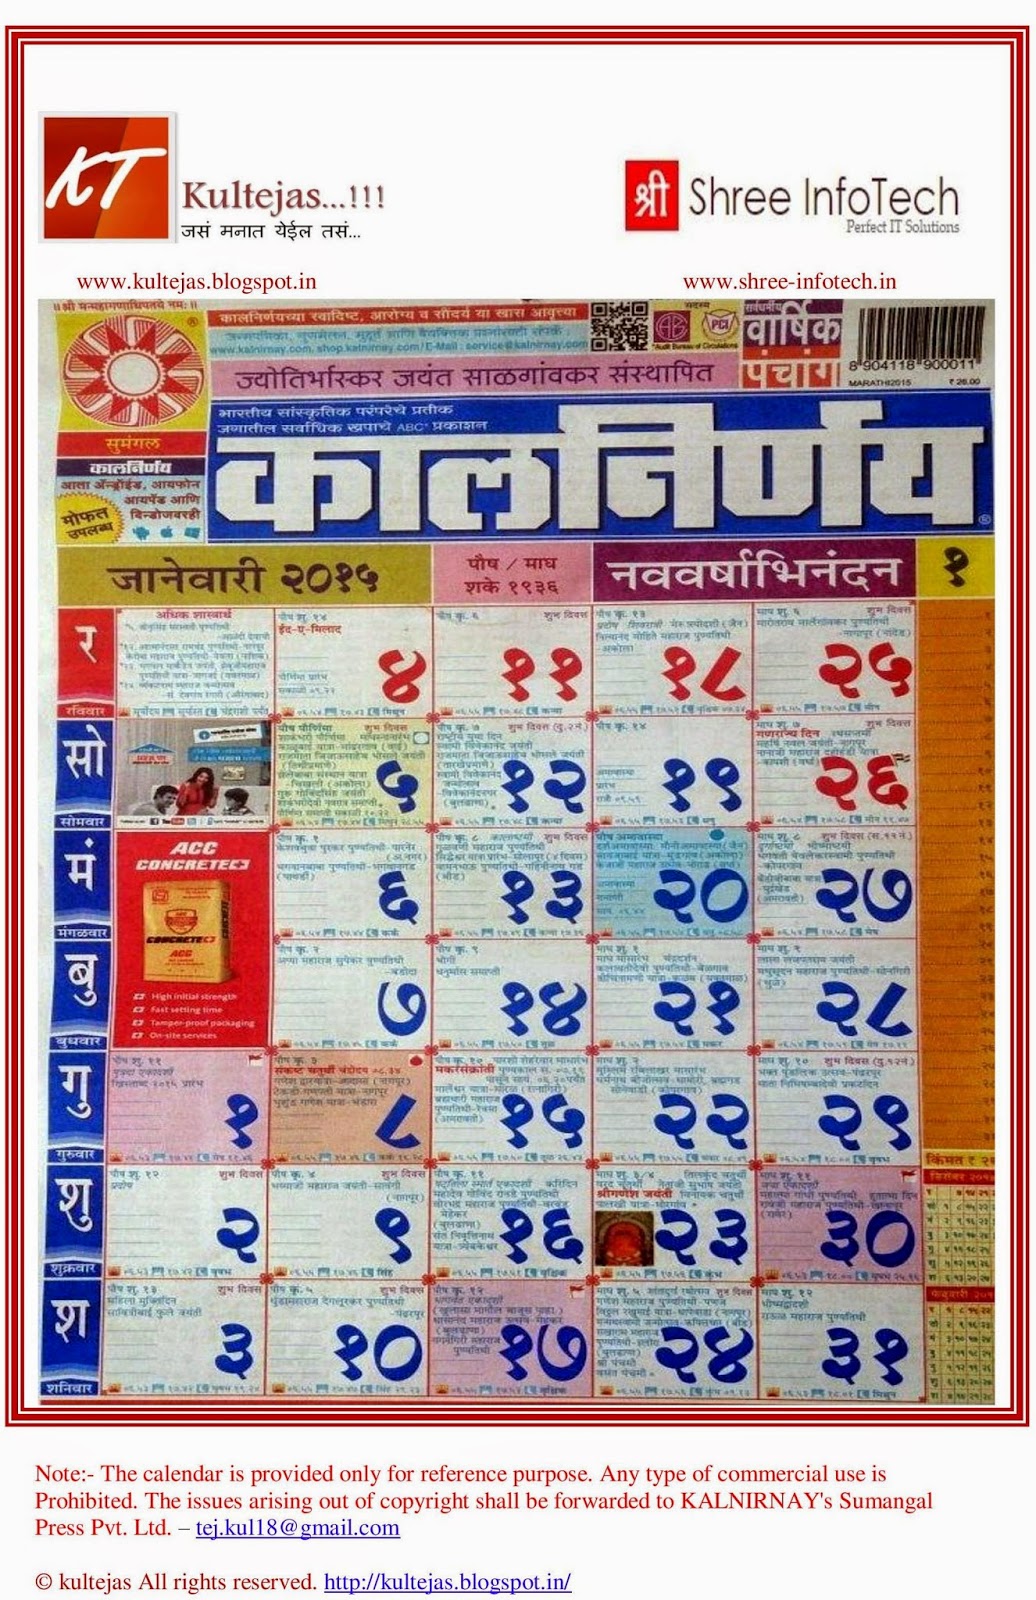 marathi-kalnirnay-calendar-2015-free-download-marathi-calendars